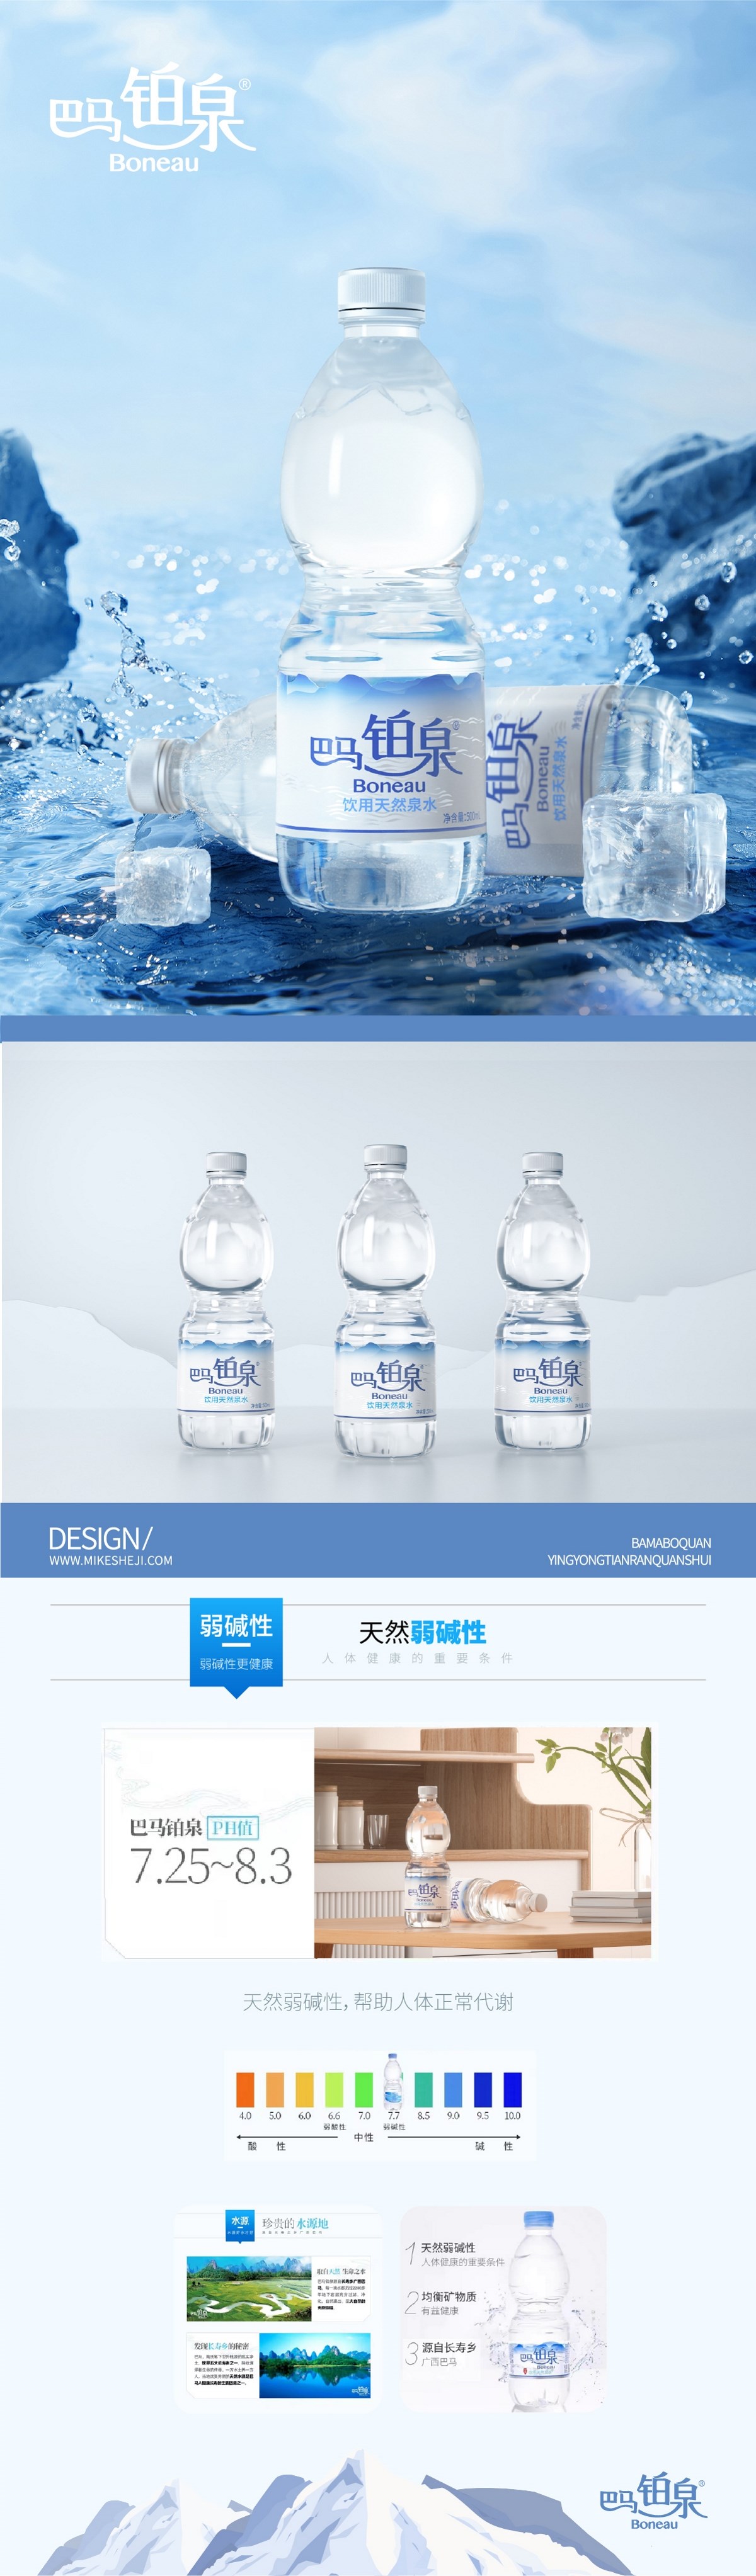 巴马铂泉丨“天赋养生之源”天然矿泉水瓶型包装设计